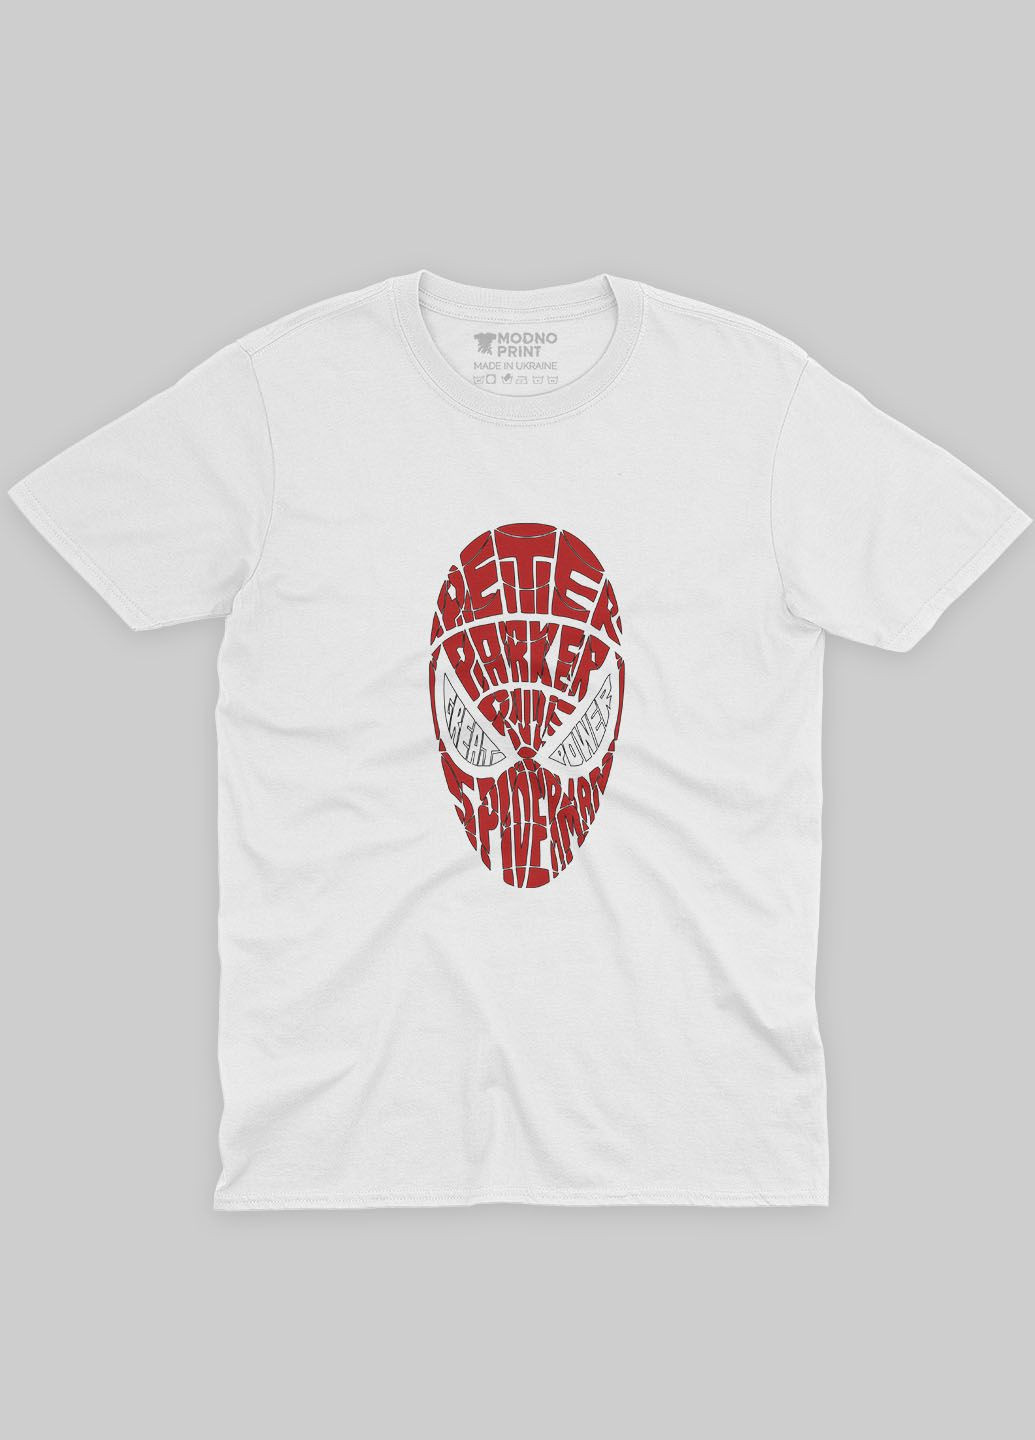 Біла демісезонна футболка для хлопчика з принтом супергероя - людина-павук (ts001-1-whi-006-014-073-b) Modno